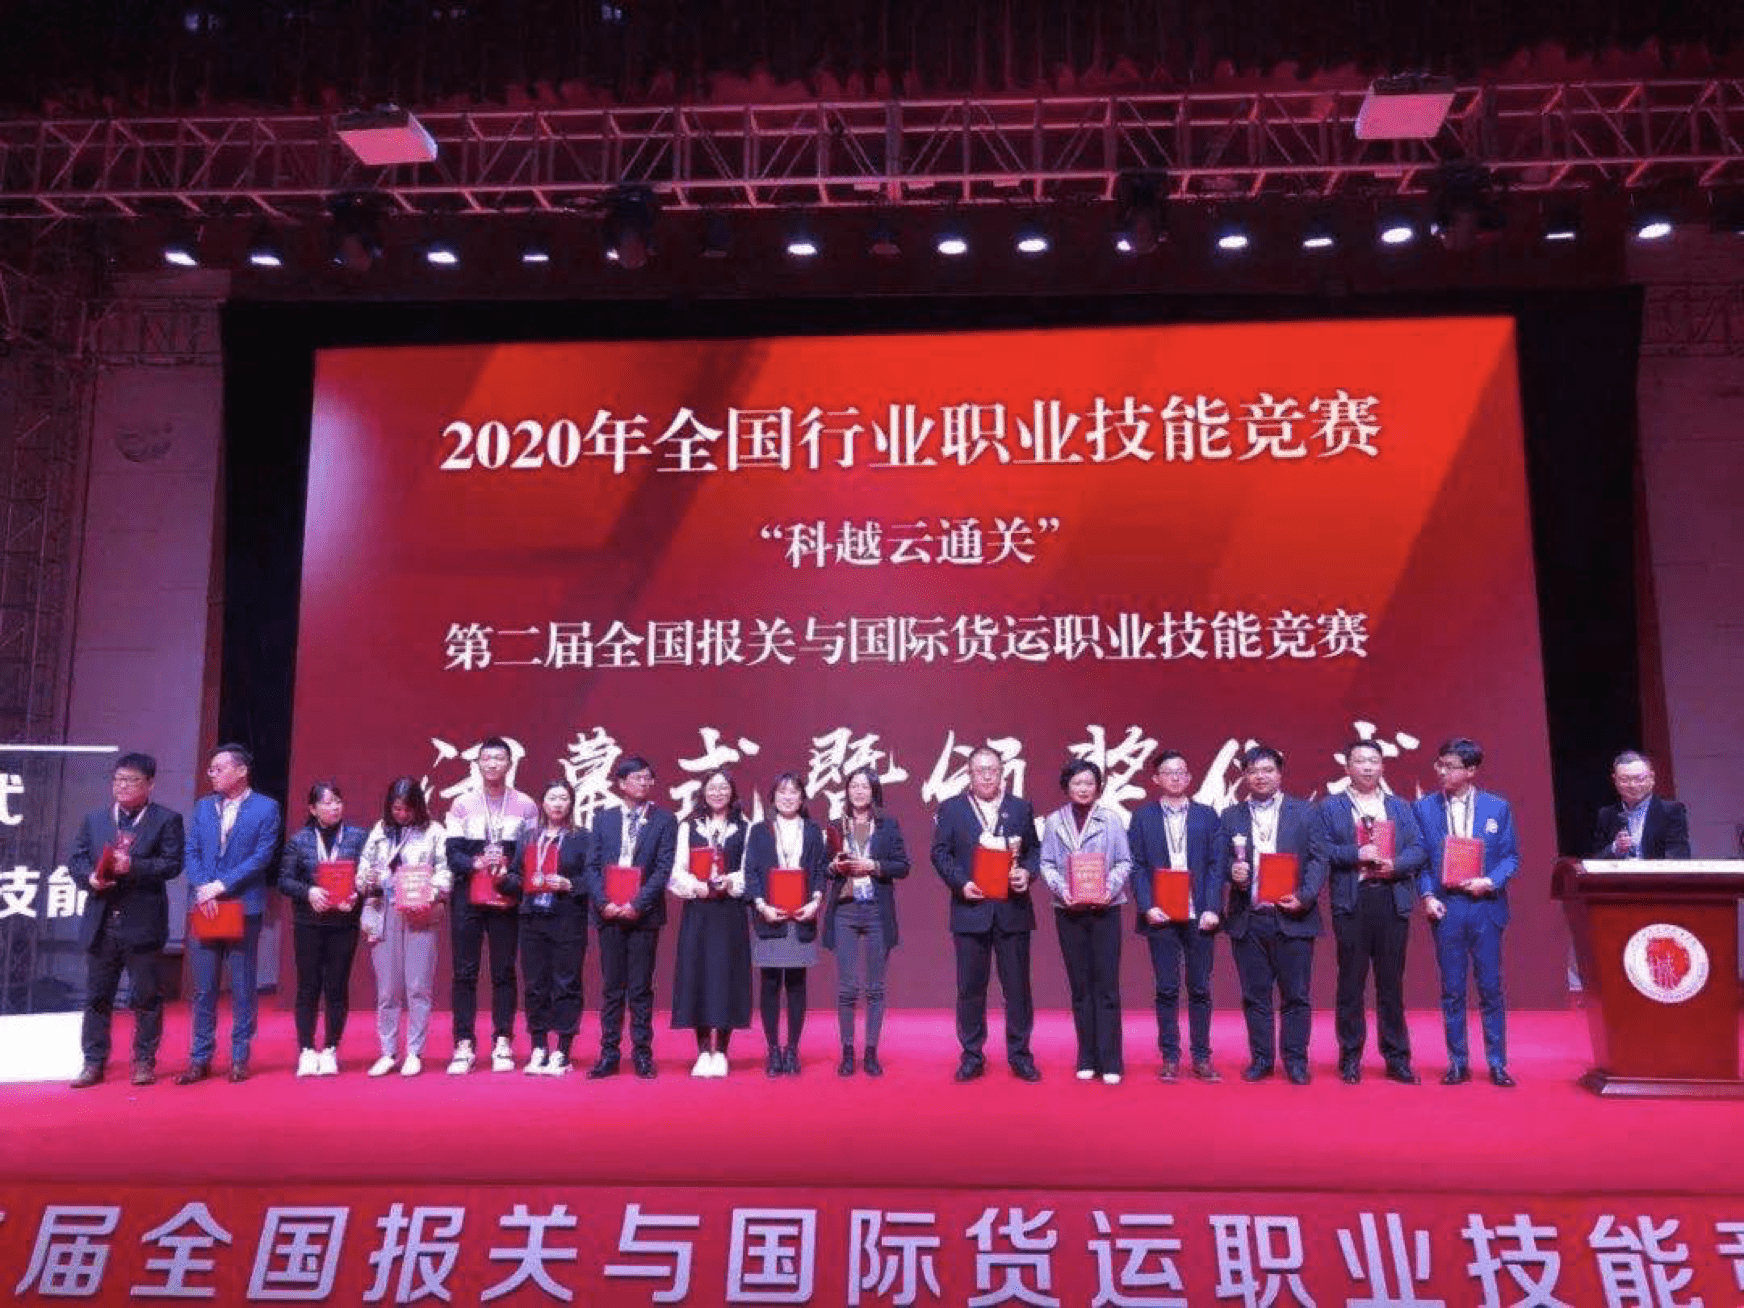 Národní soutěž odborných dovedností v oboru 2020“ pořádala CCBA & Oujian Group v Chongqing